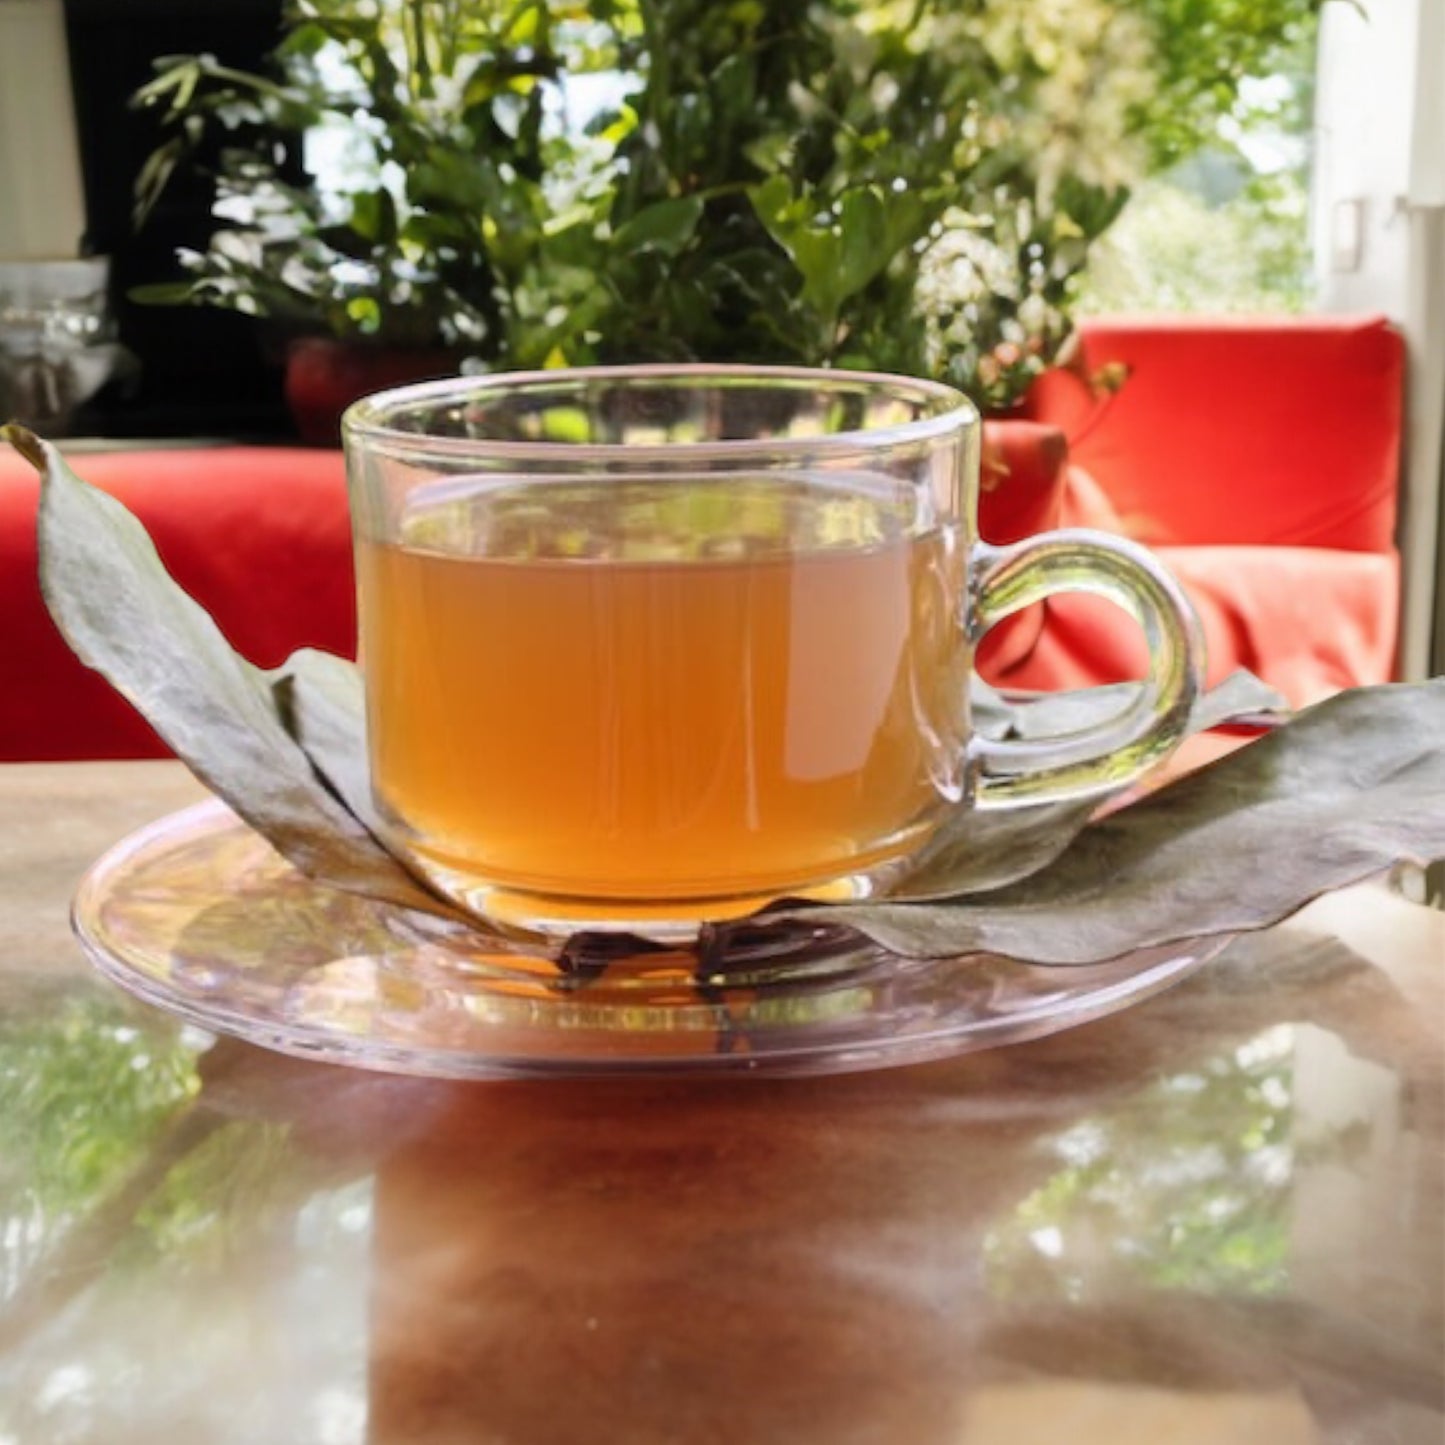 Sour-Sop Tea Leaves